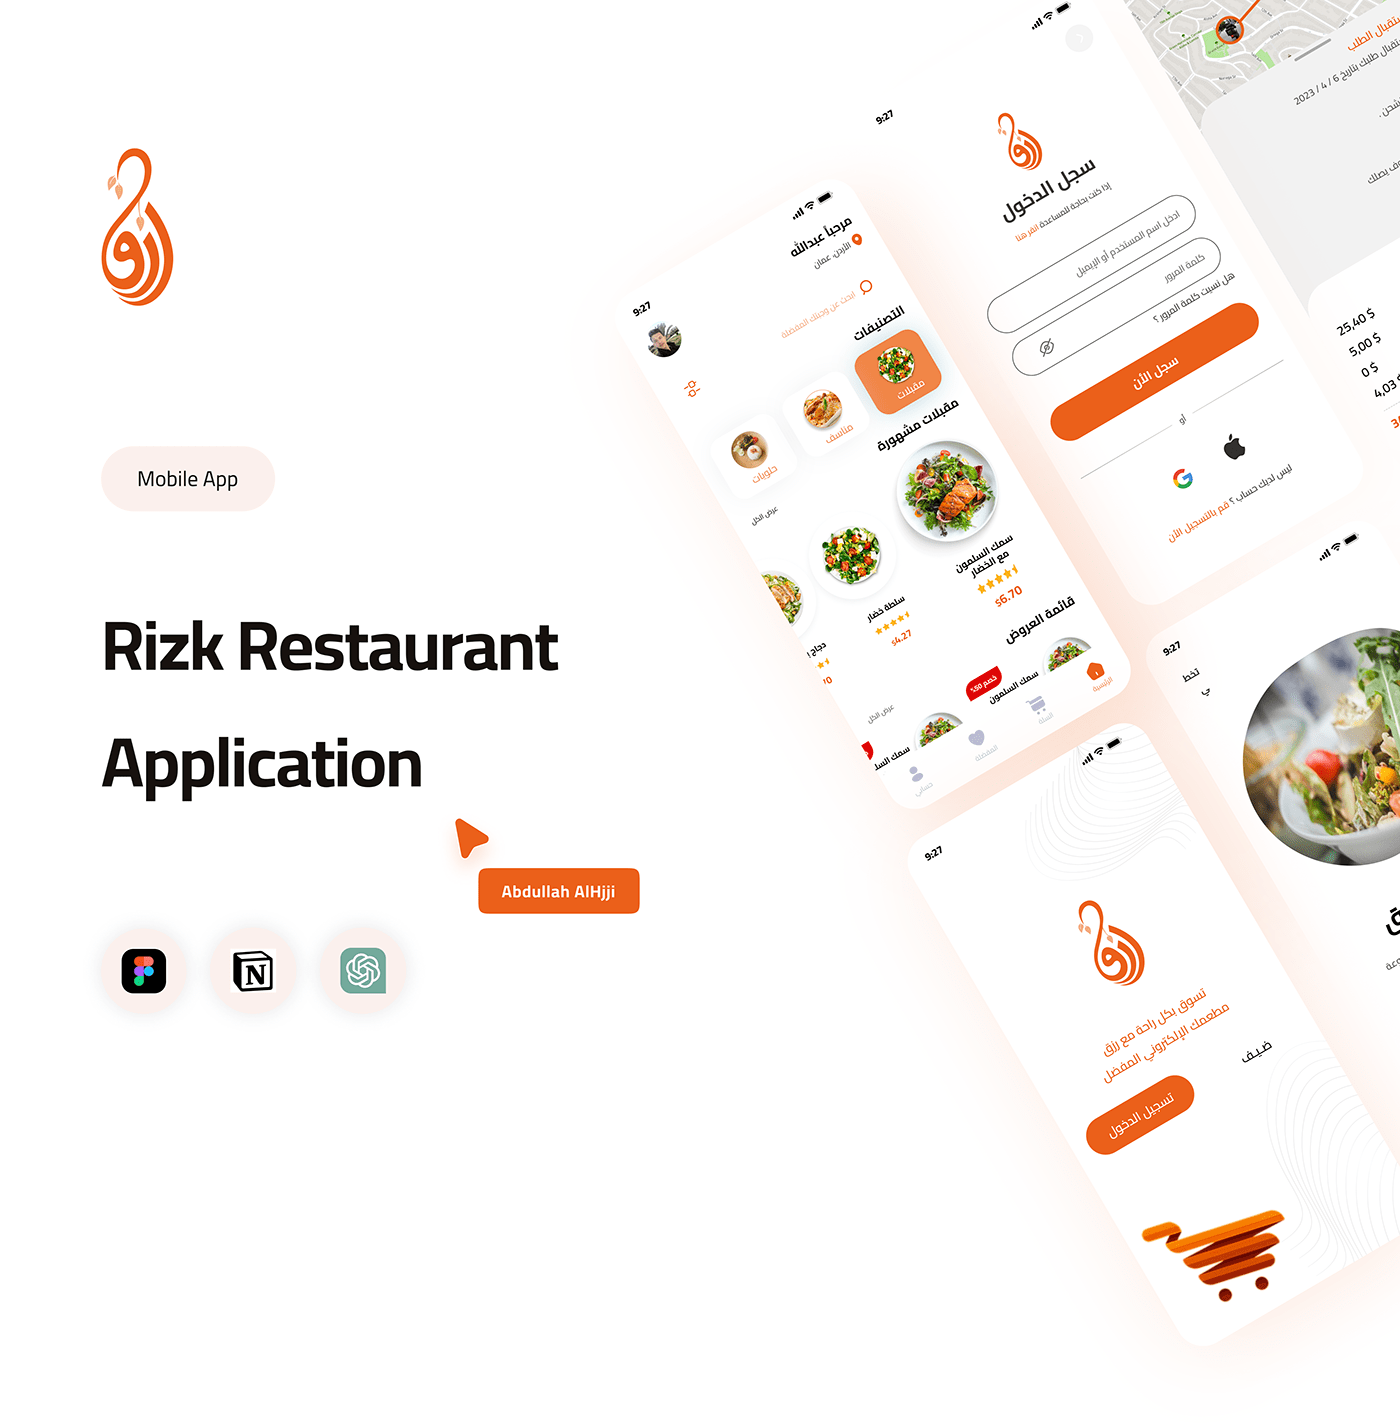 Food  delivery restaurant delivery app Delivery Food service ux UI/UX ui design Mobile app